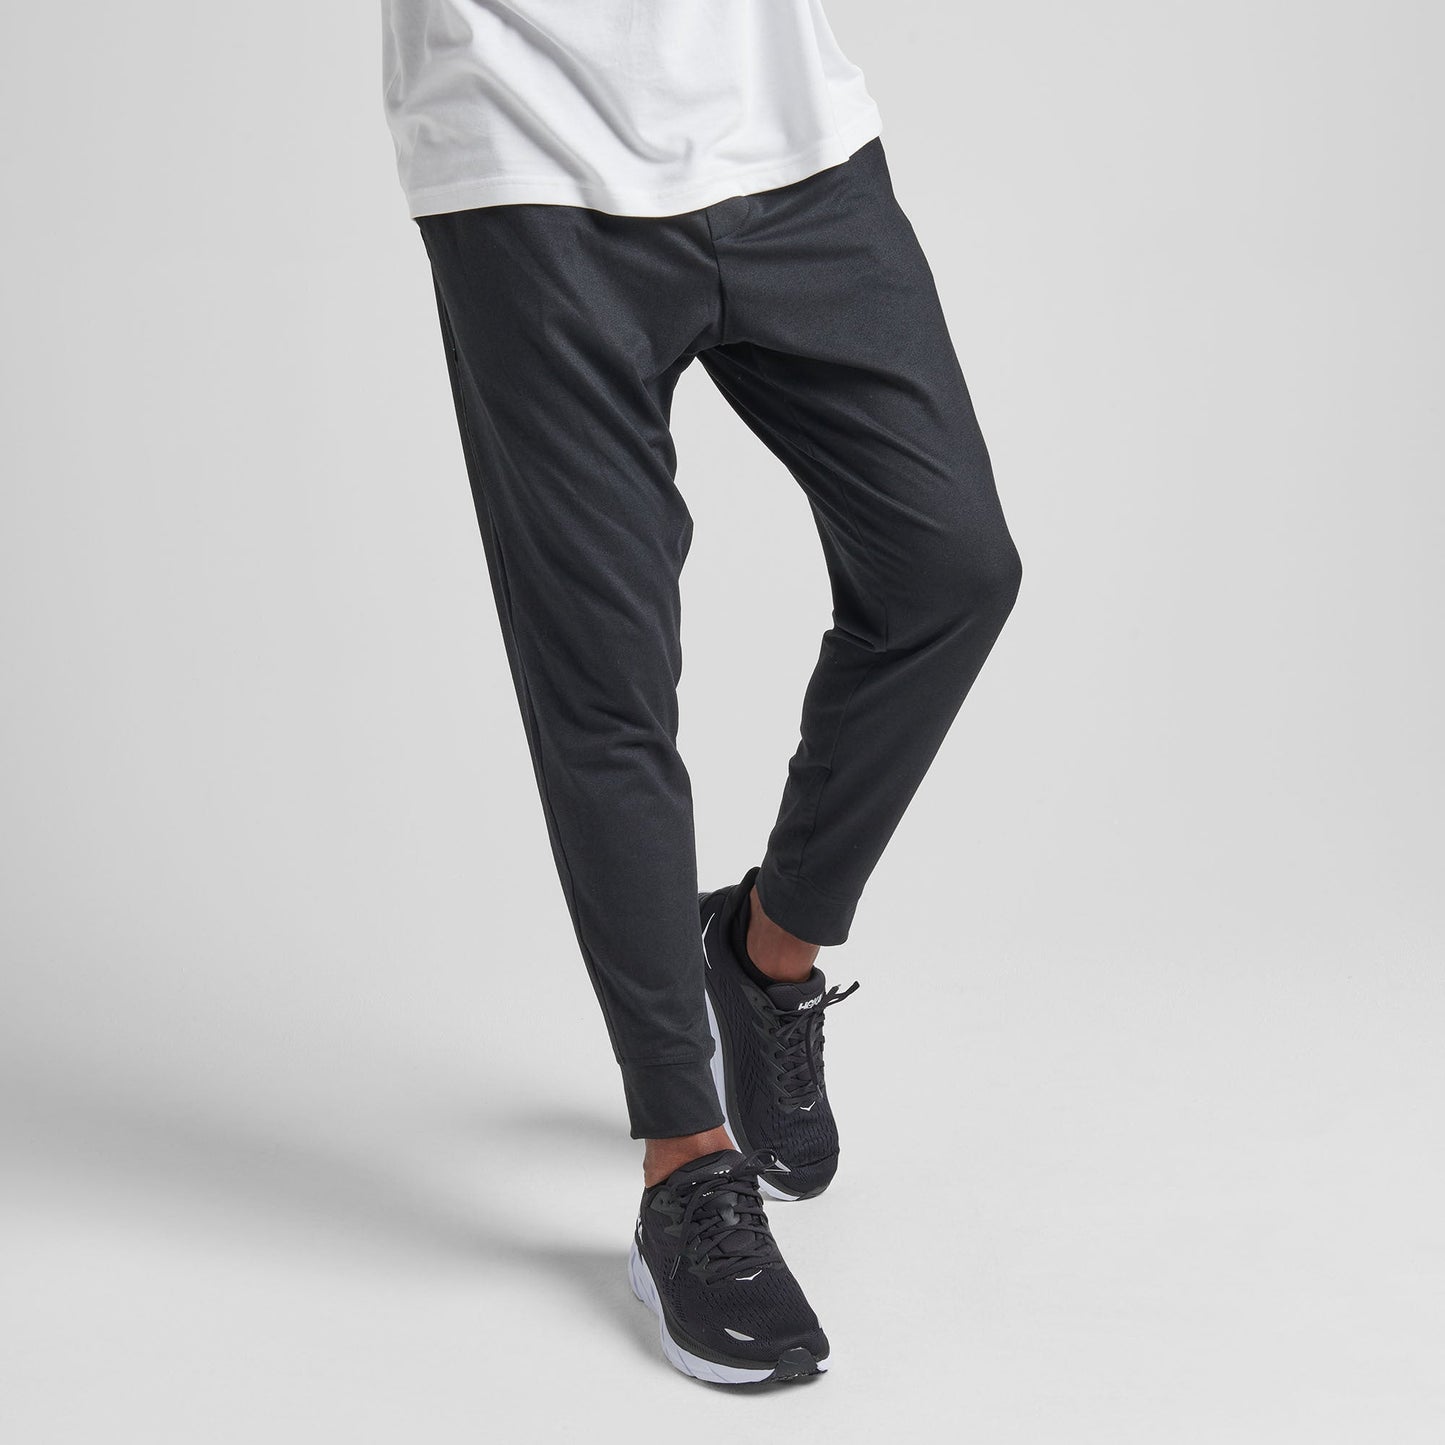 Pantalon de jogging noir Shelter de Stance | modèle